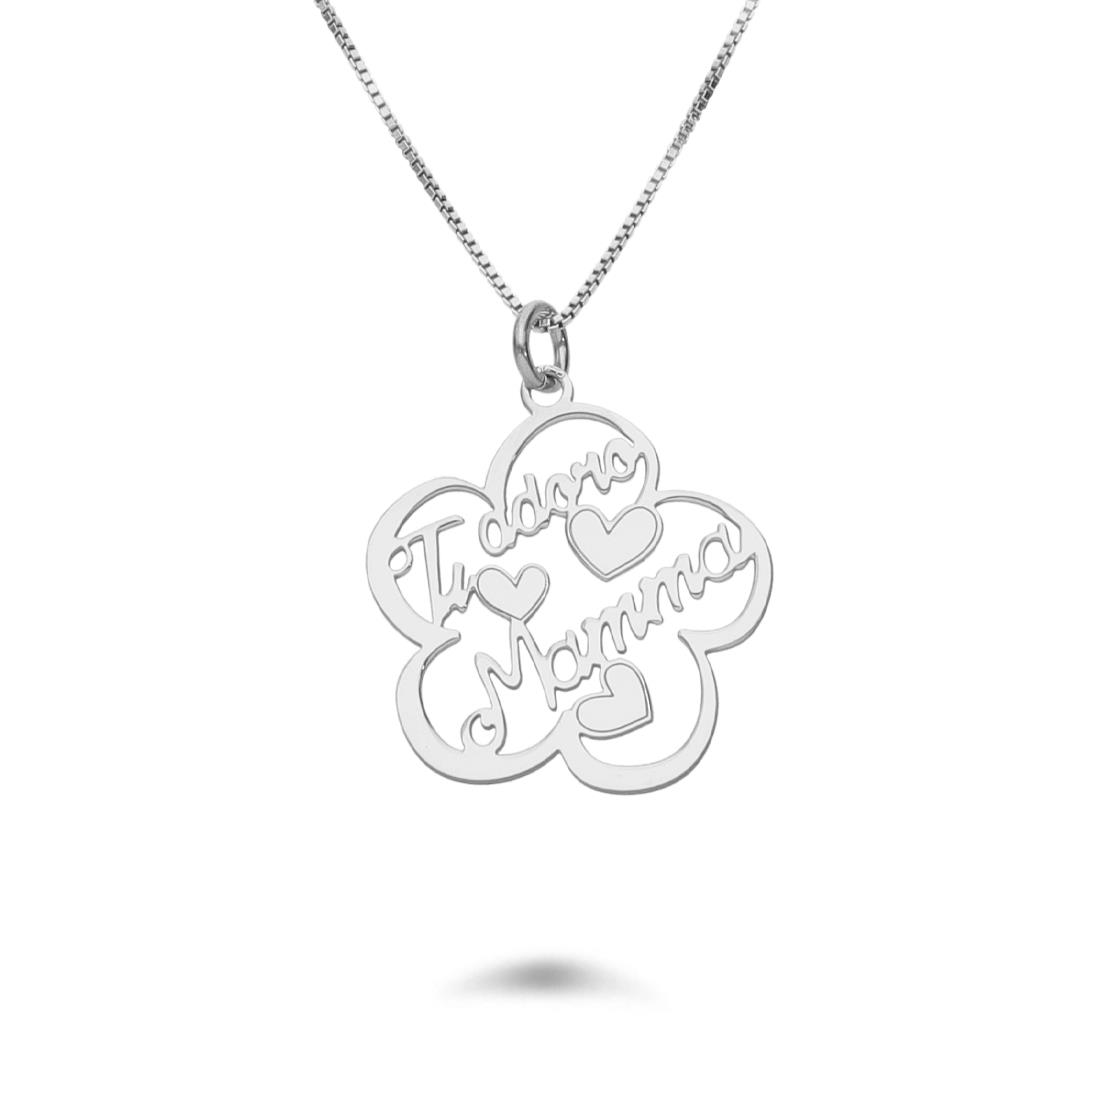 Rhodium-plated silver necklace with heart pendant - DESIDERI PREZIOSI